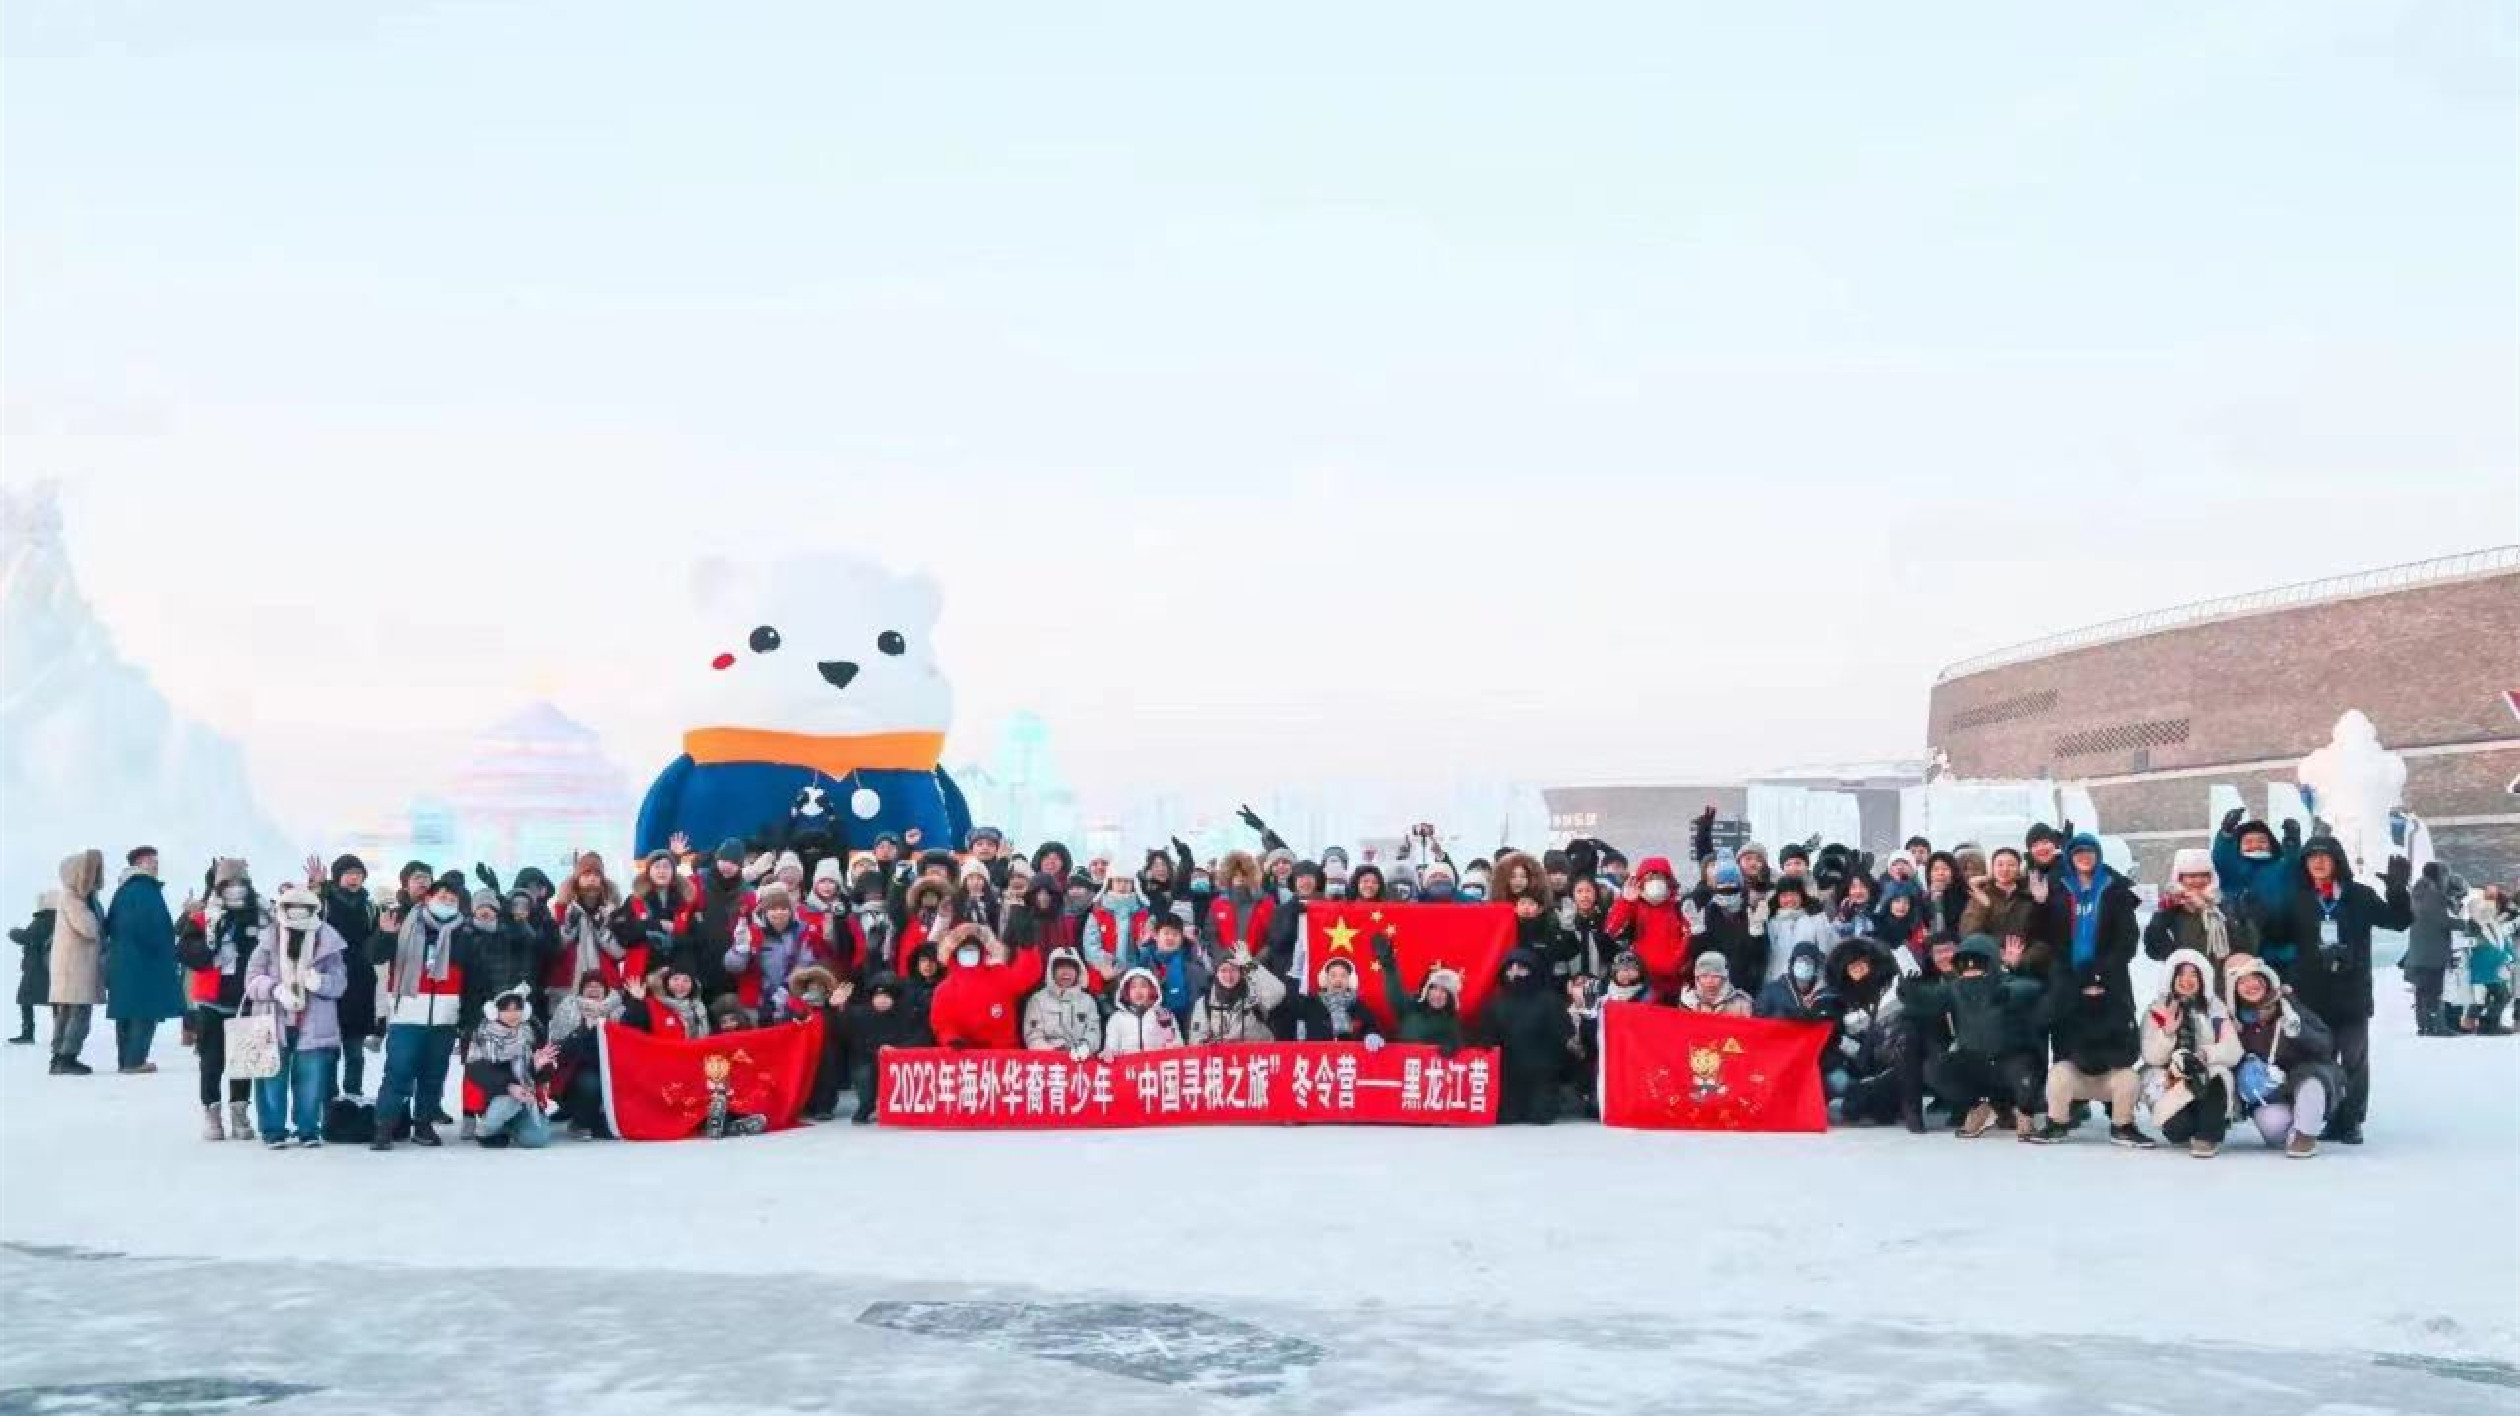 百餘名華裔青少年在黑龍江「尋根」 走進冰雪童話感受璀璨華夏文化